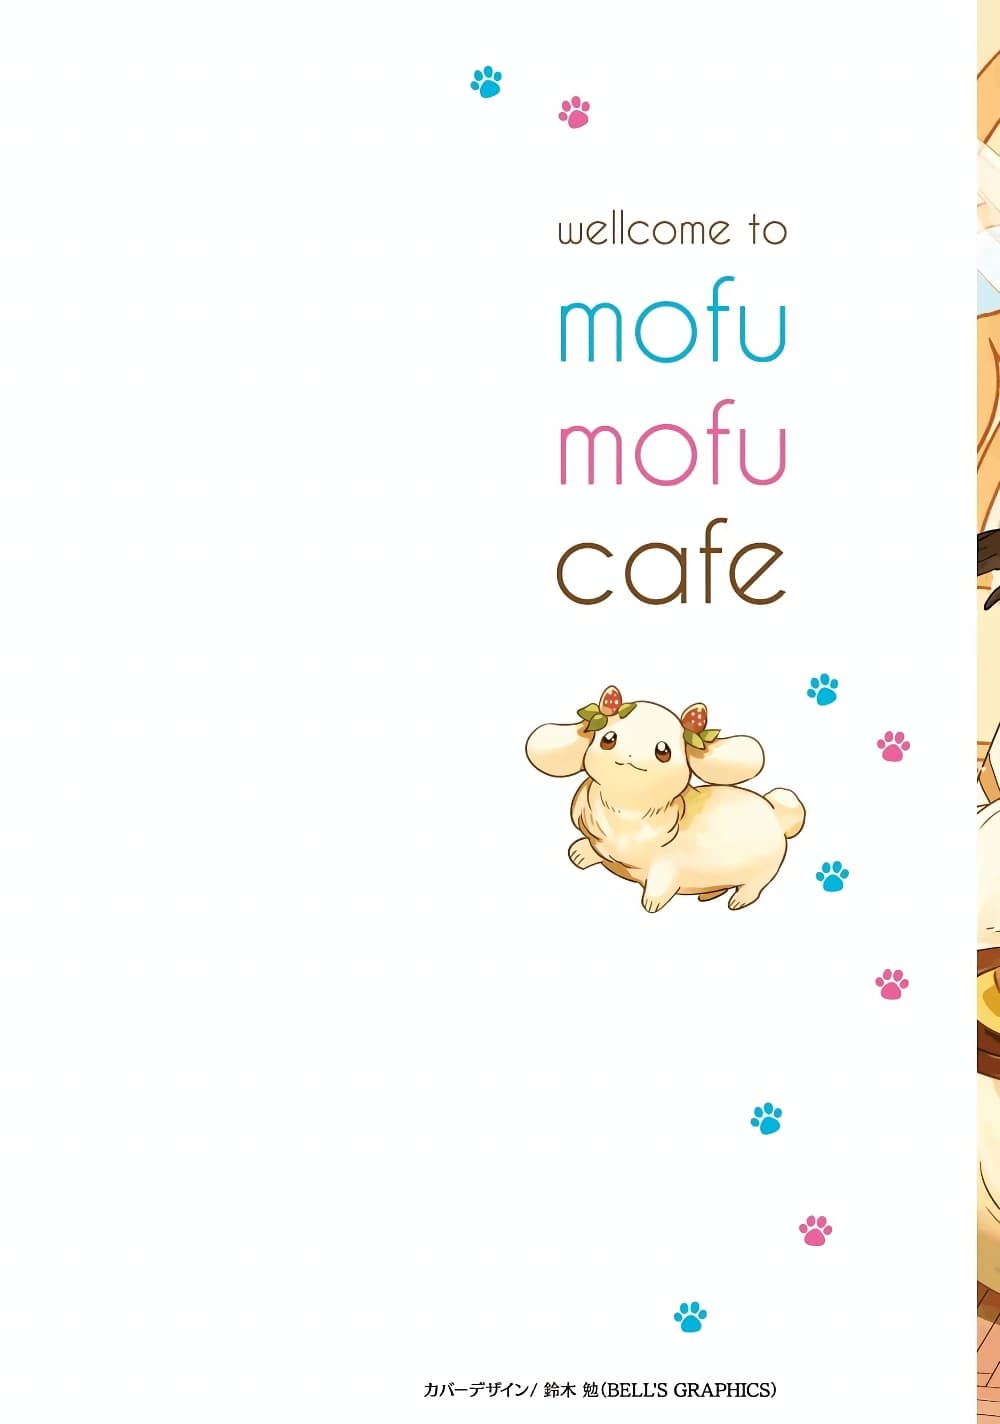 Isekai Mofumofu Cafe ตอนที่ 1 (2)